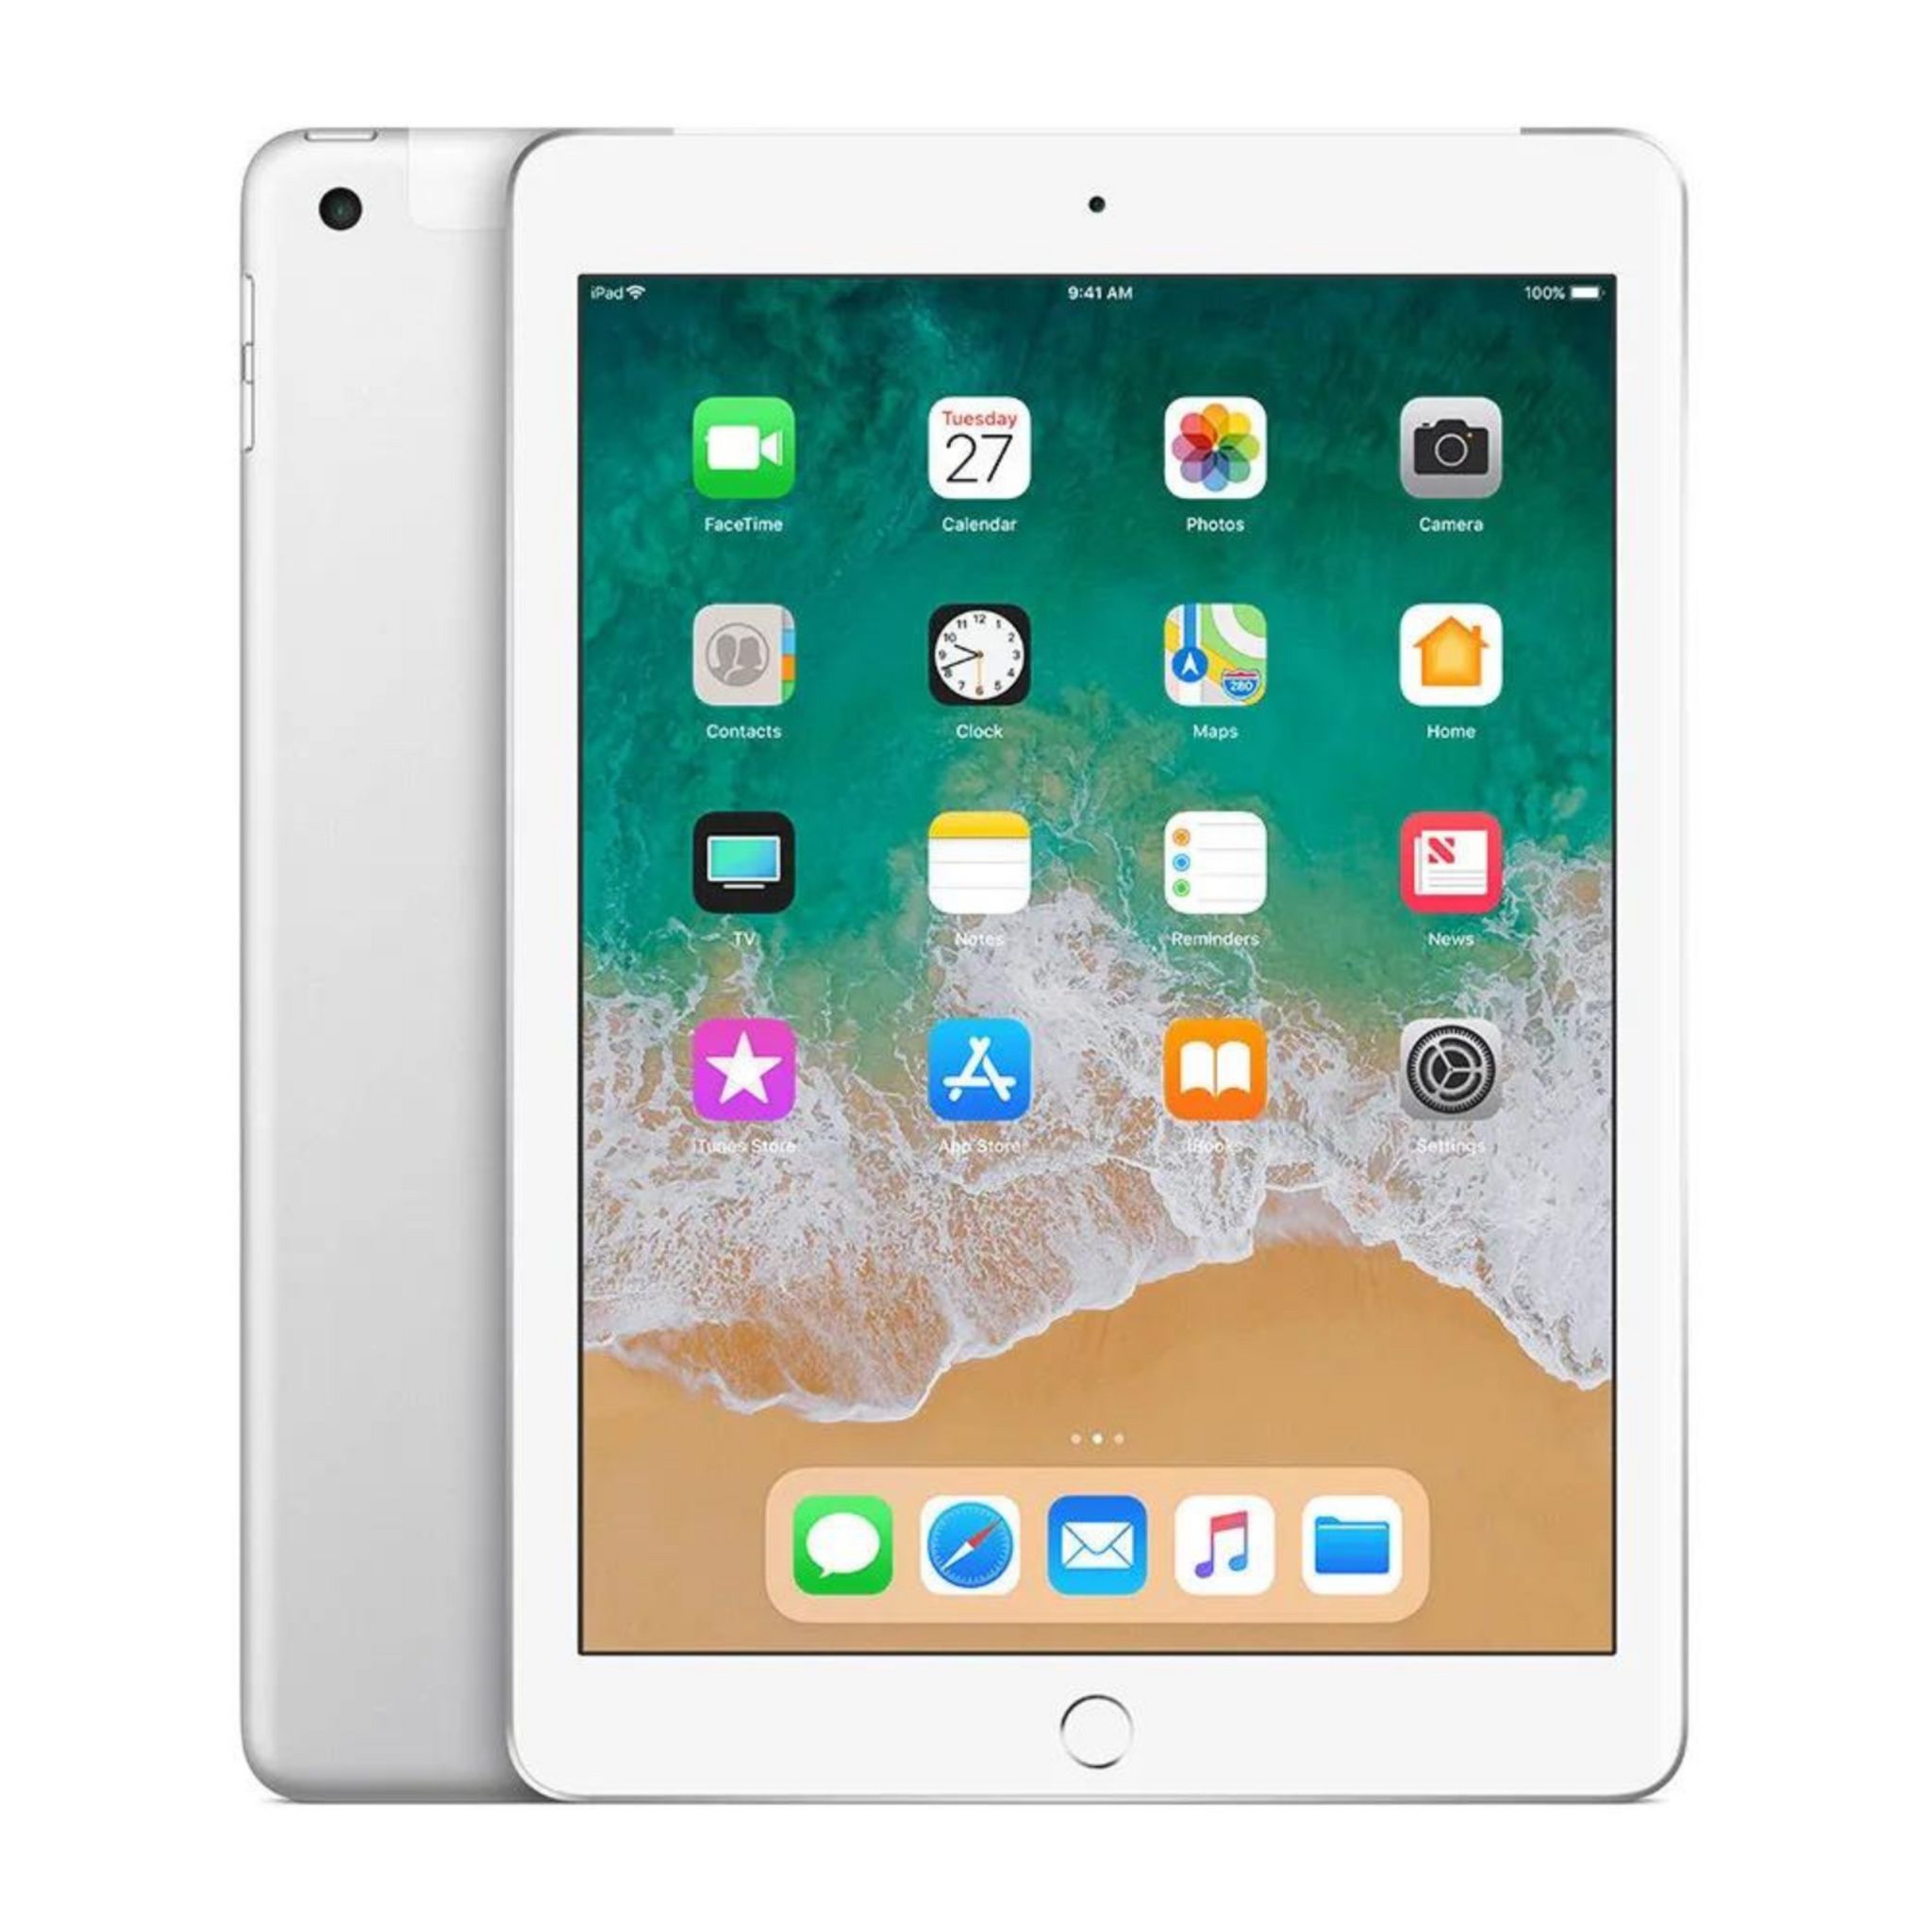 Changer batterie tablette iPad Air 2 sur Lille